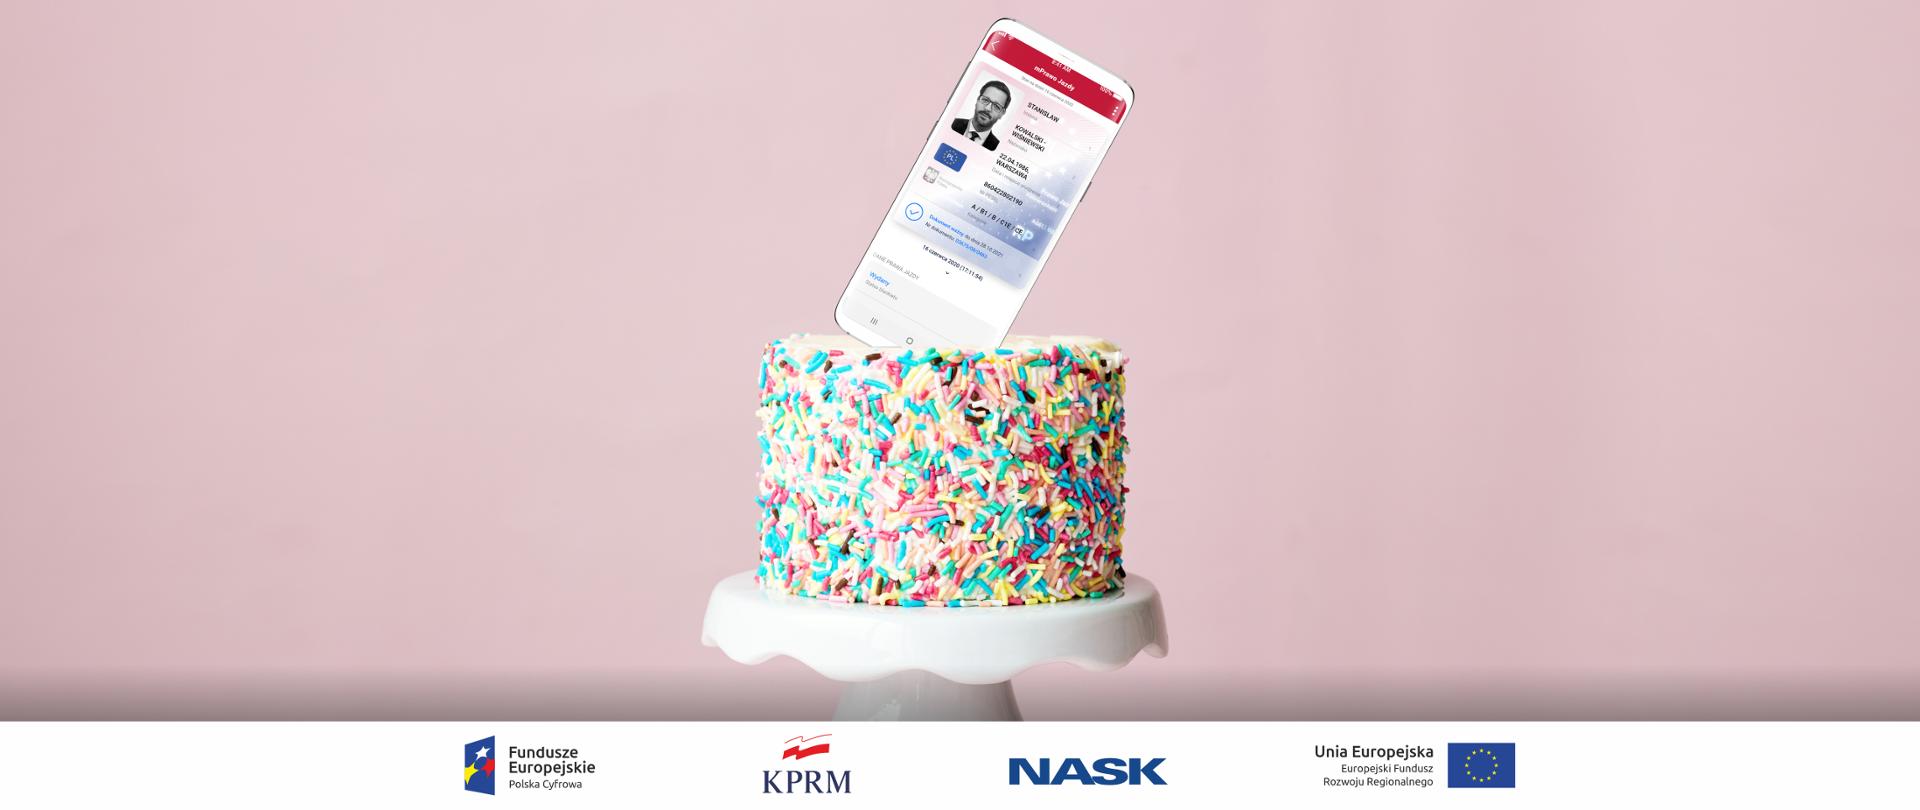 Kolorowy tort na jasnoróżowym tle, leży na białej paterze, na środku tortu - zamiast świeczki - telefon, na ekranie którego wyświetla się mPrawo Jazdy.